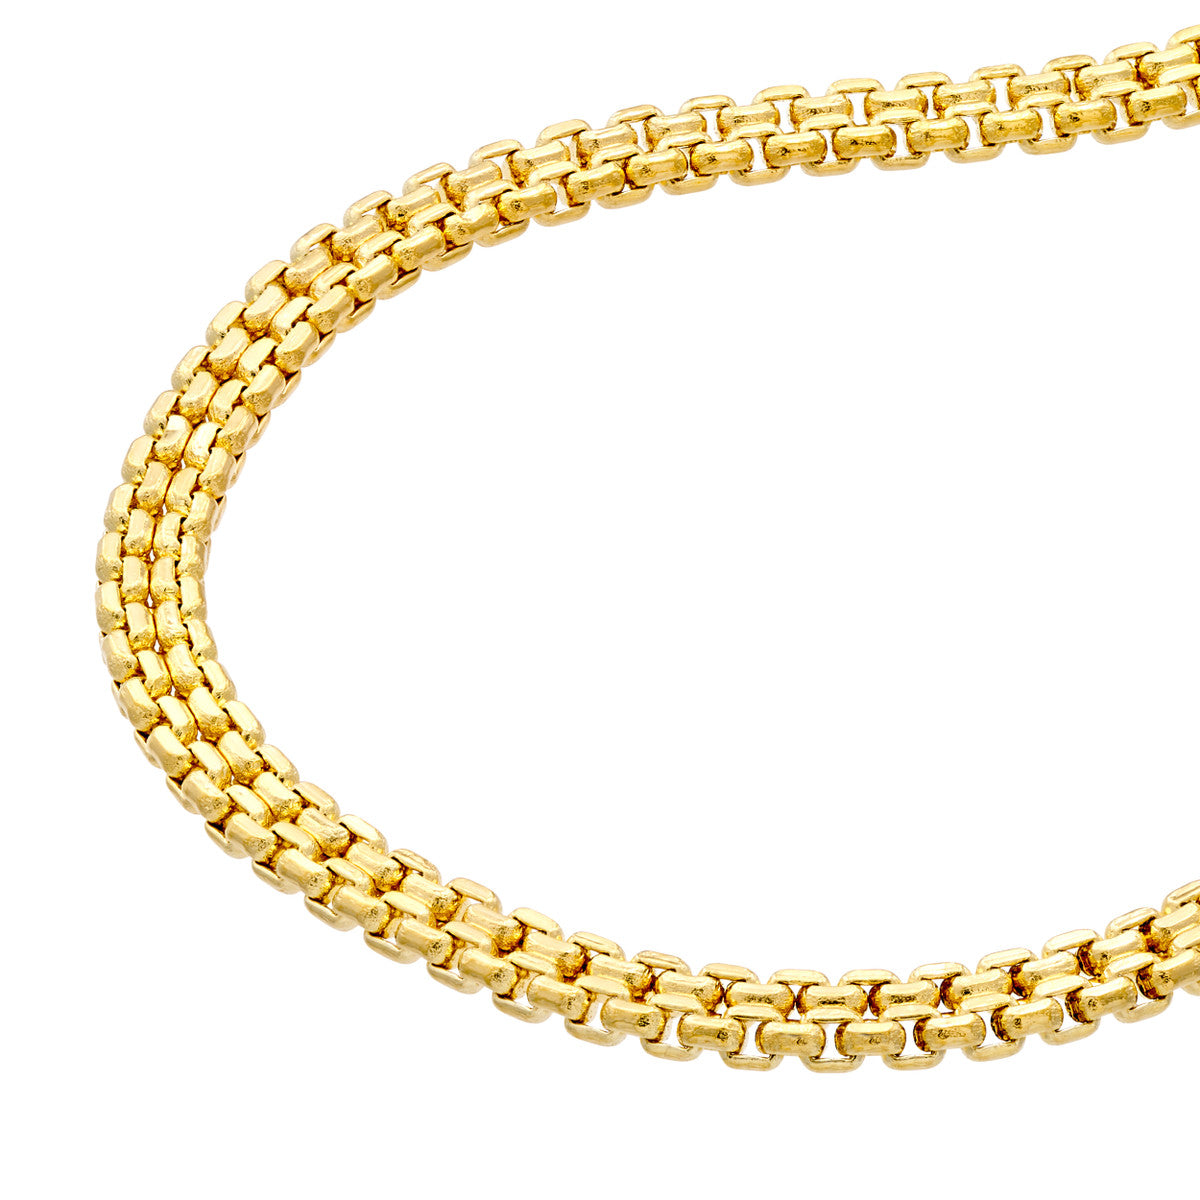 Bismark Chain Bracelet in 14K Gold